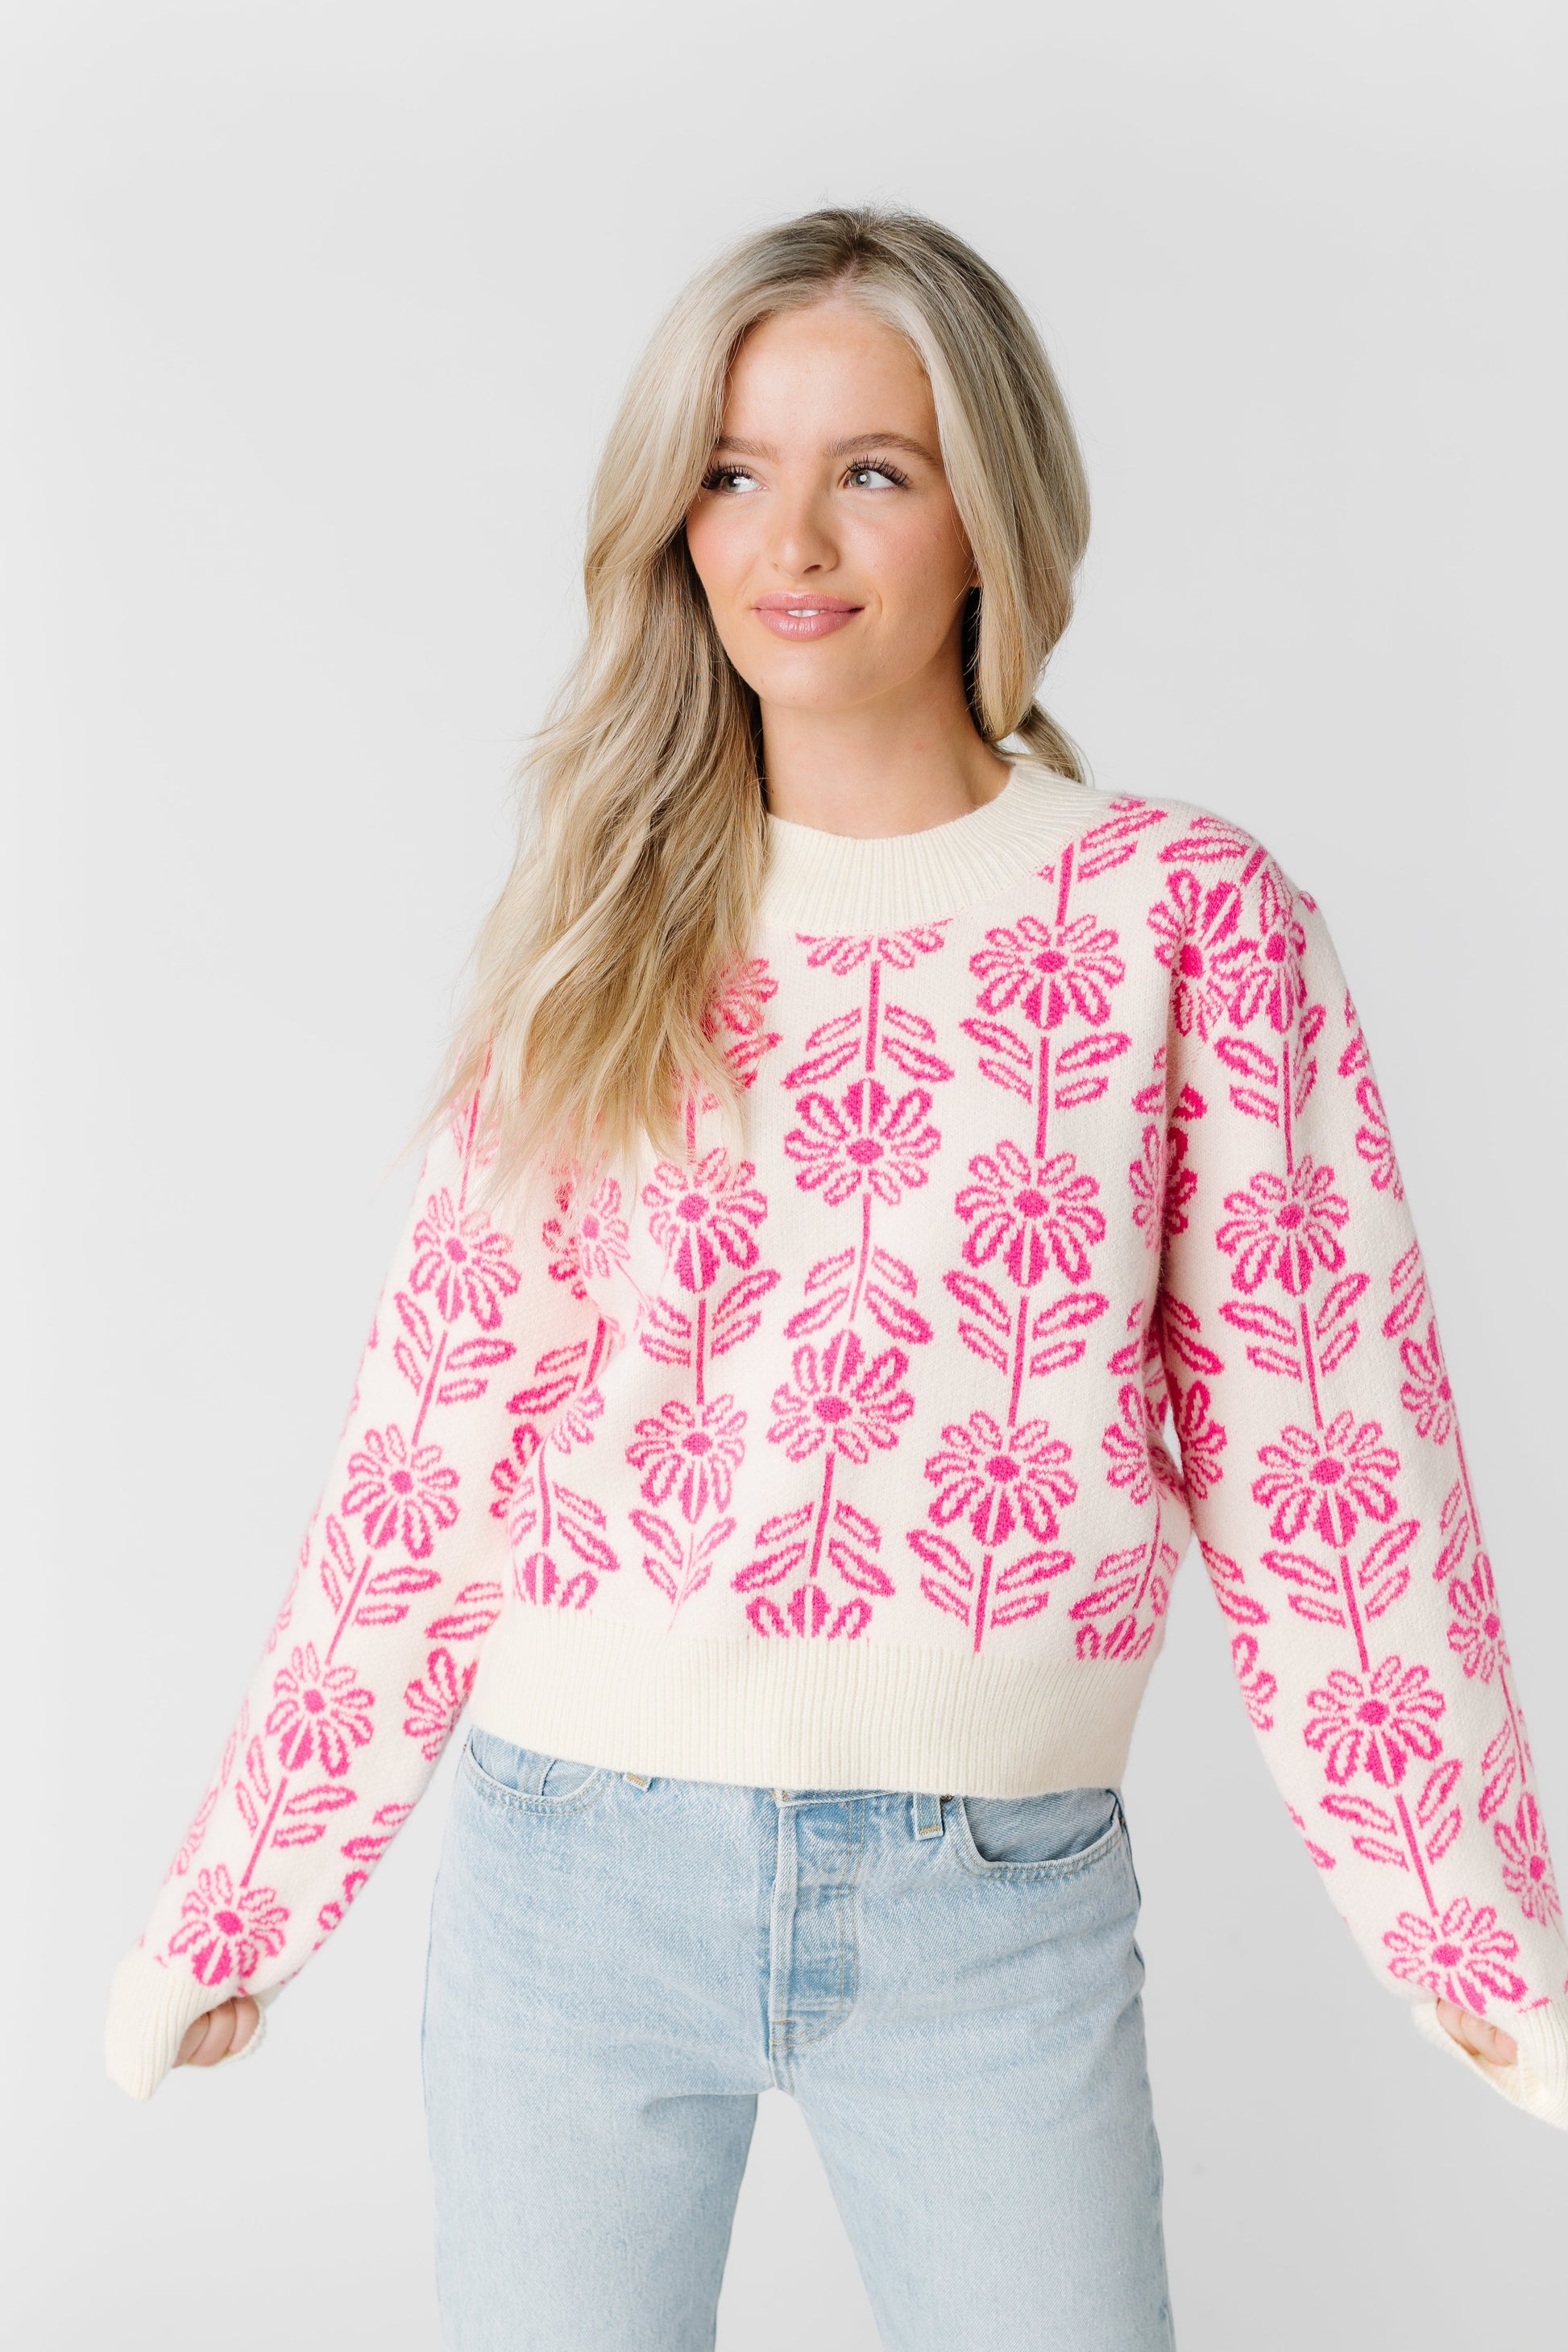 Flower Sweater WOMEN'S SWEATERS &merci 